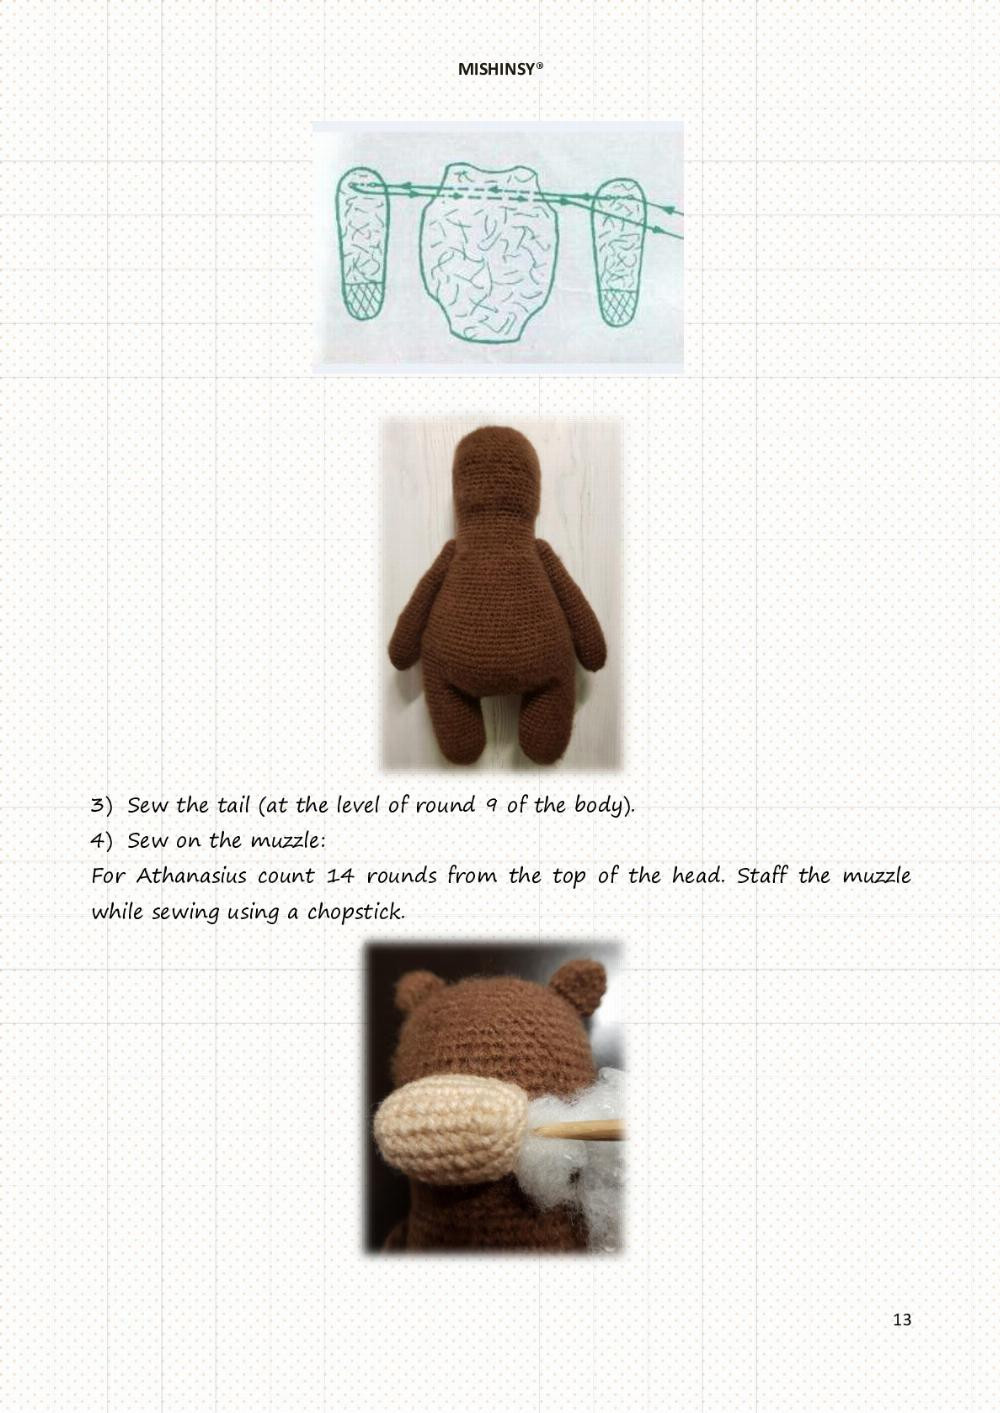 MISHINSY bear crochet pattern